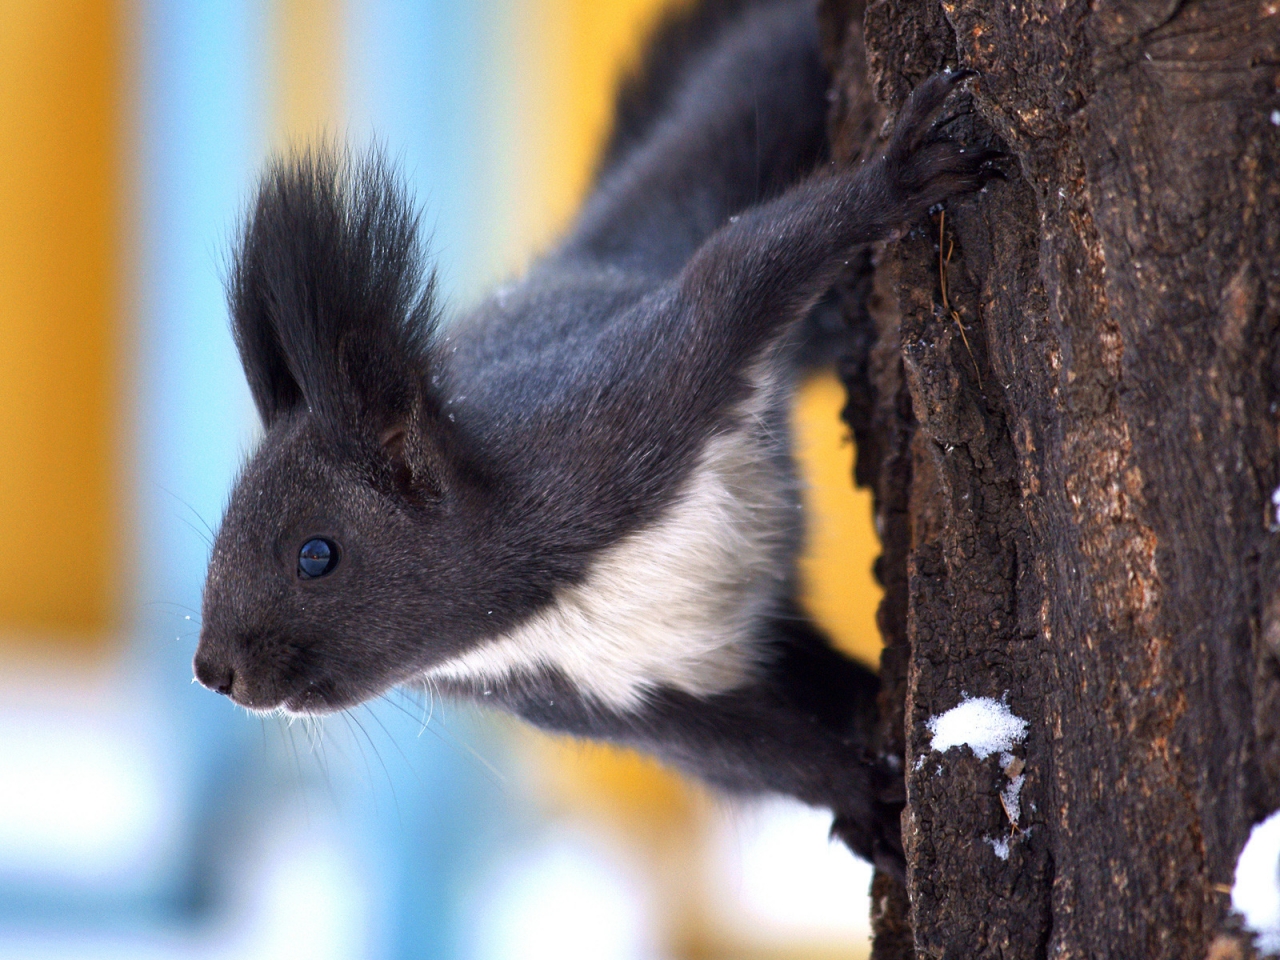 Dark Squirrel for 1280 x 960 resolution